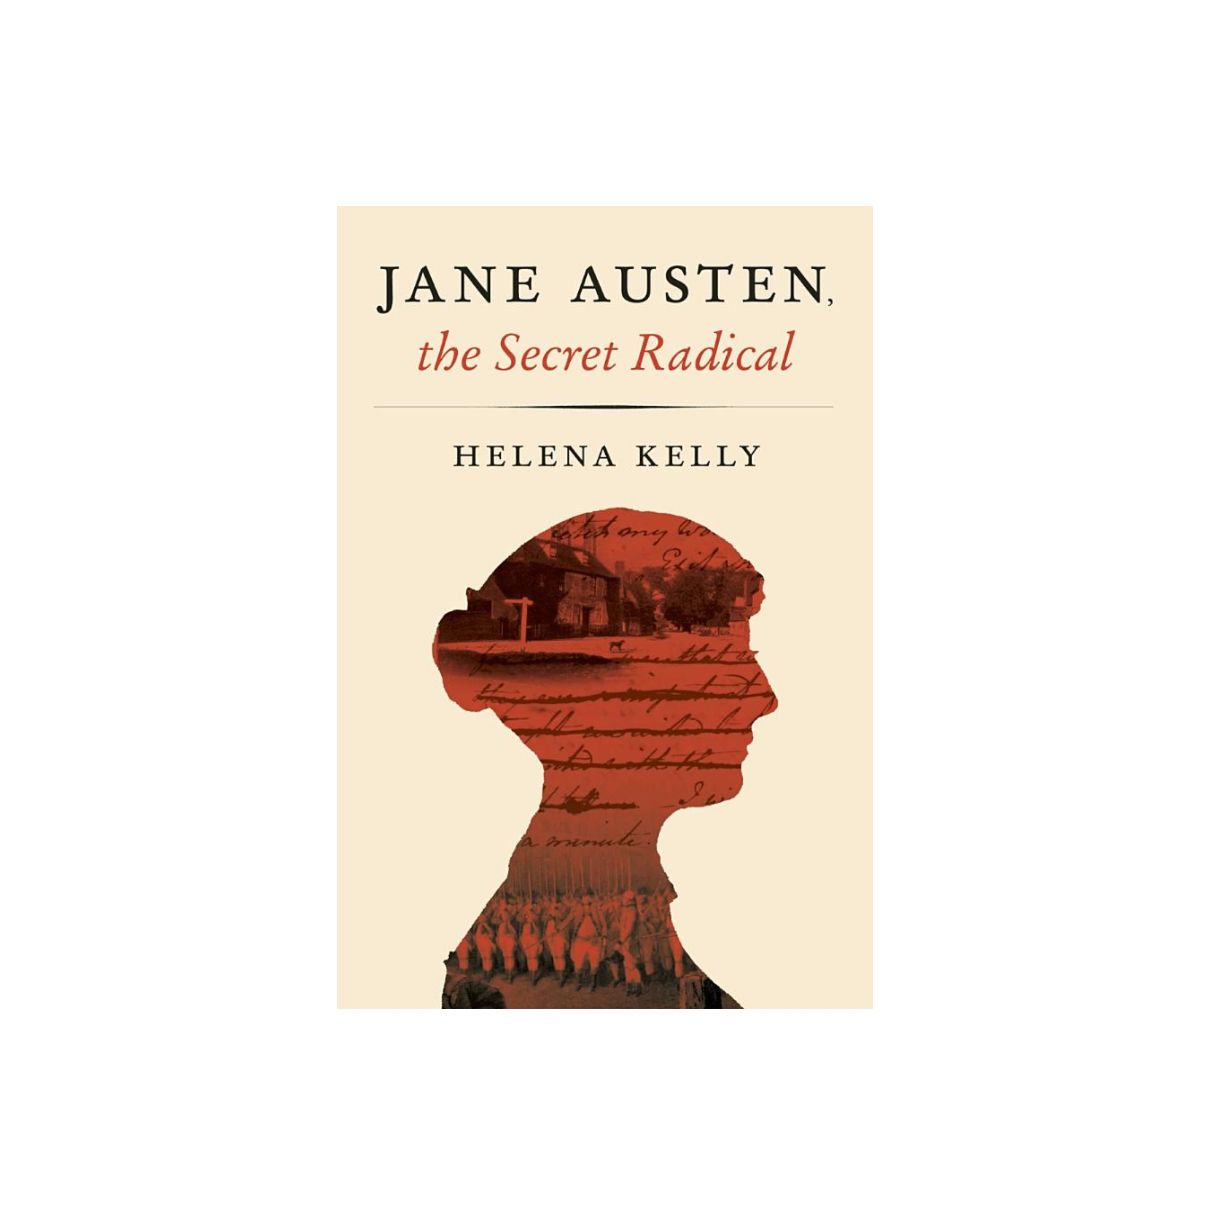 Jane Austen, la radicale secrète, par Helena Kelly